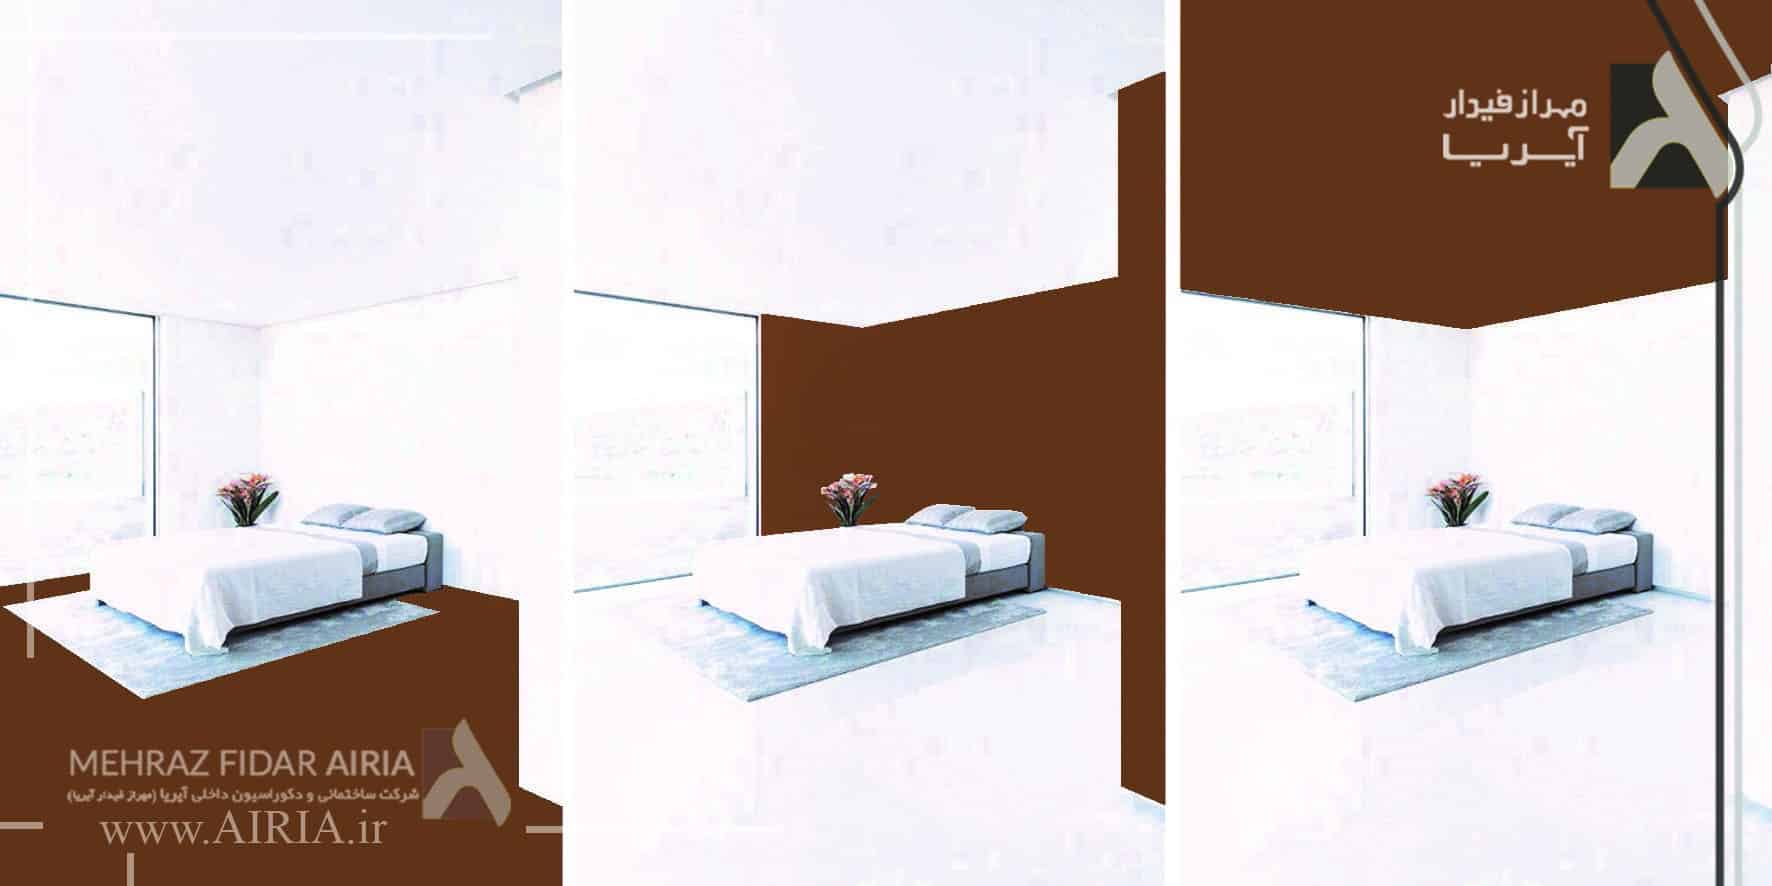 نقش رنگ قهوه ای در تأثیرات رنگهای مختلف در طراحی داخلی